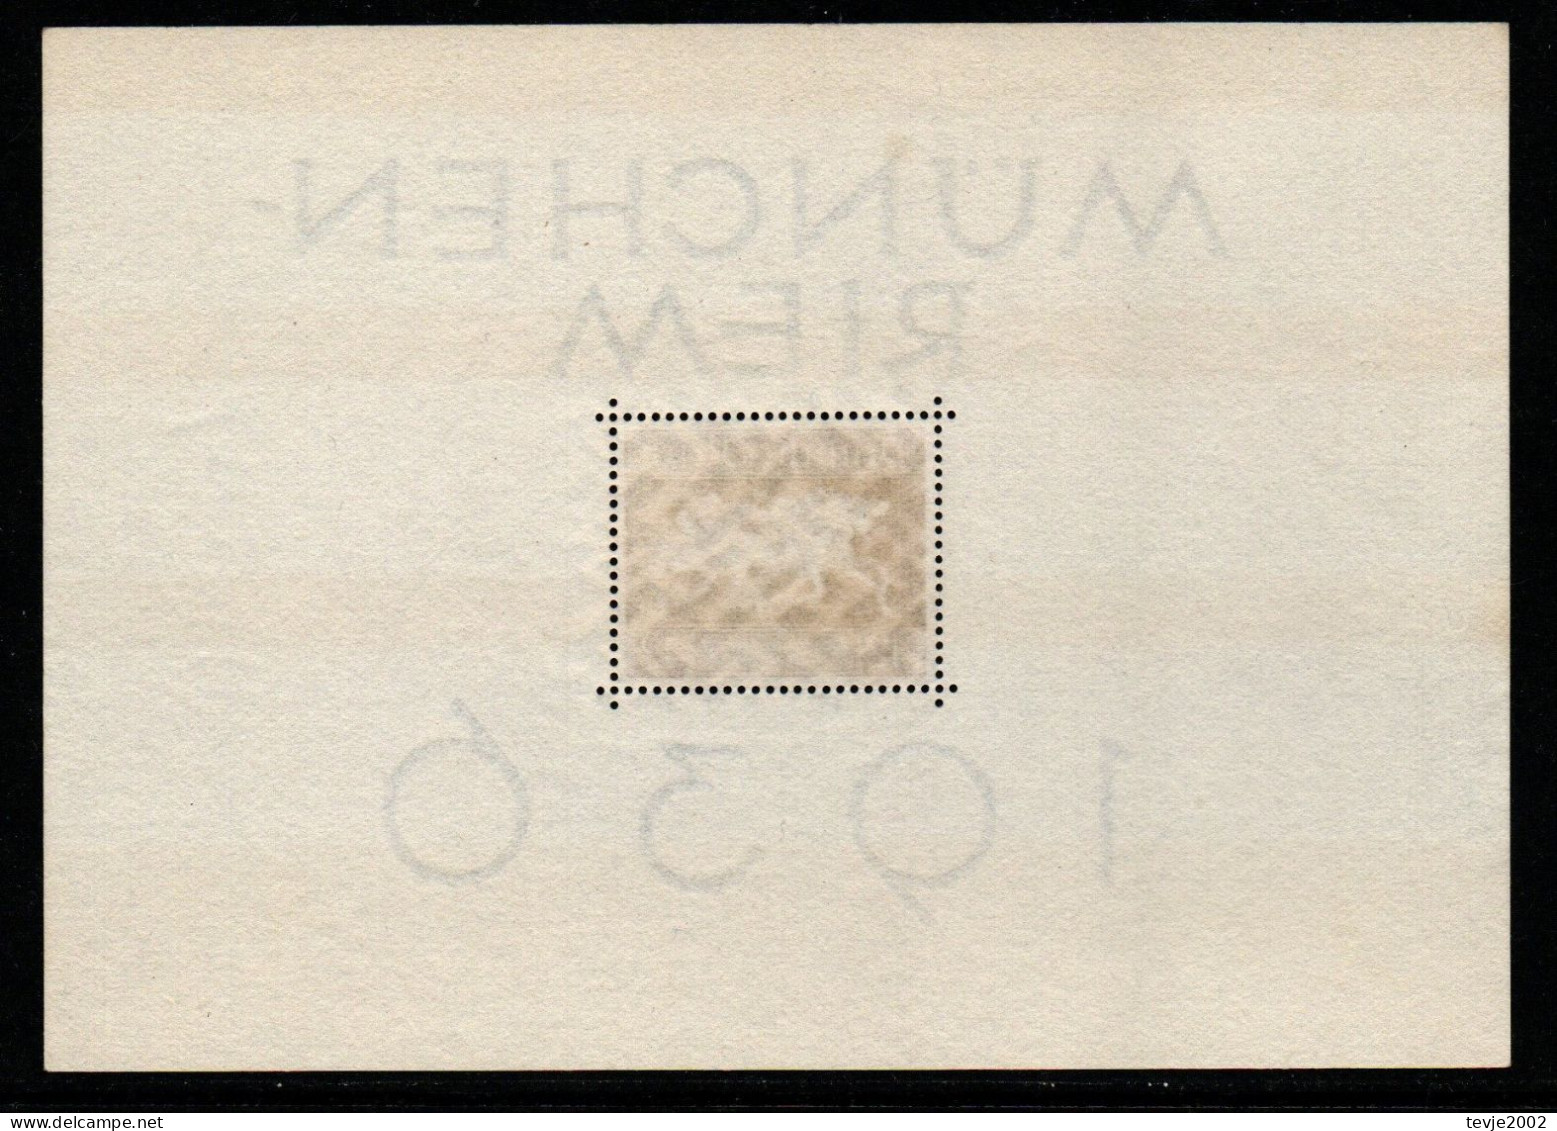 Deutsches Reich 1936 - Mi.Nr. Block 4 X - Postfrisch MNH - Blocks & Sheetlets